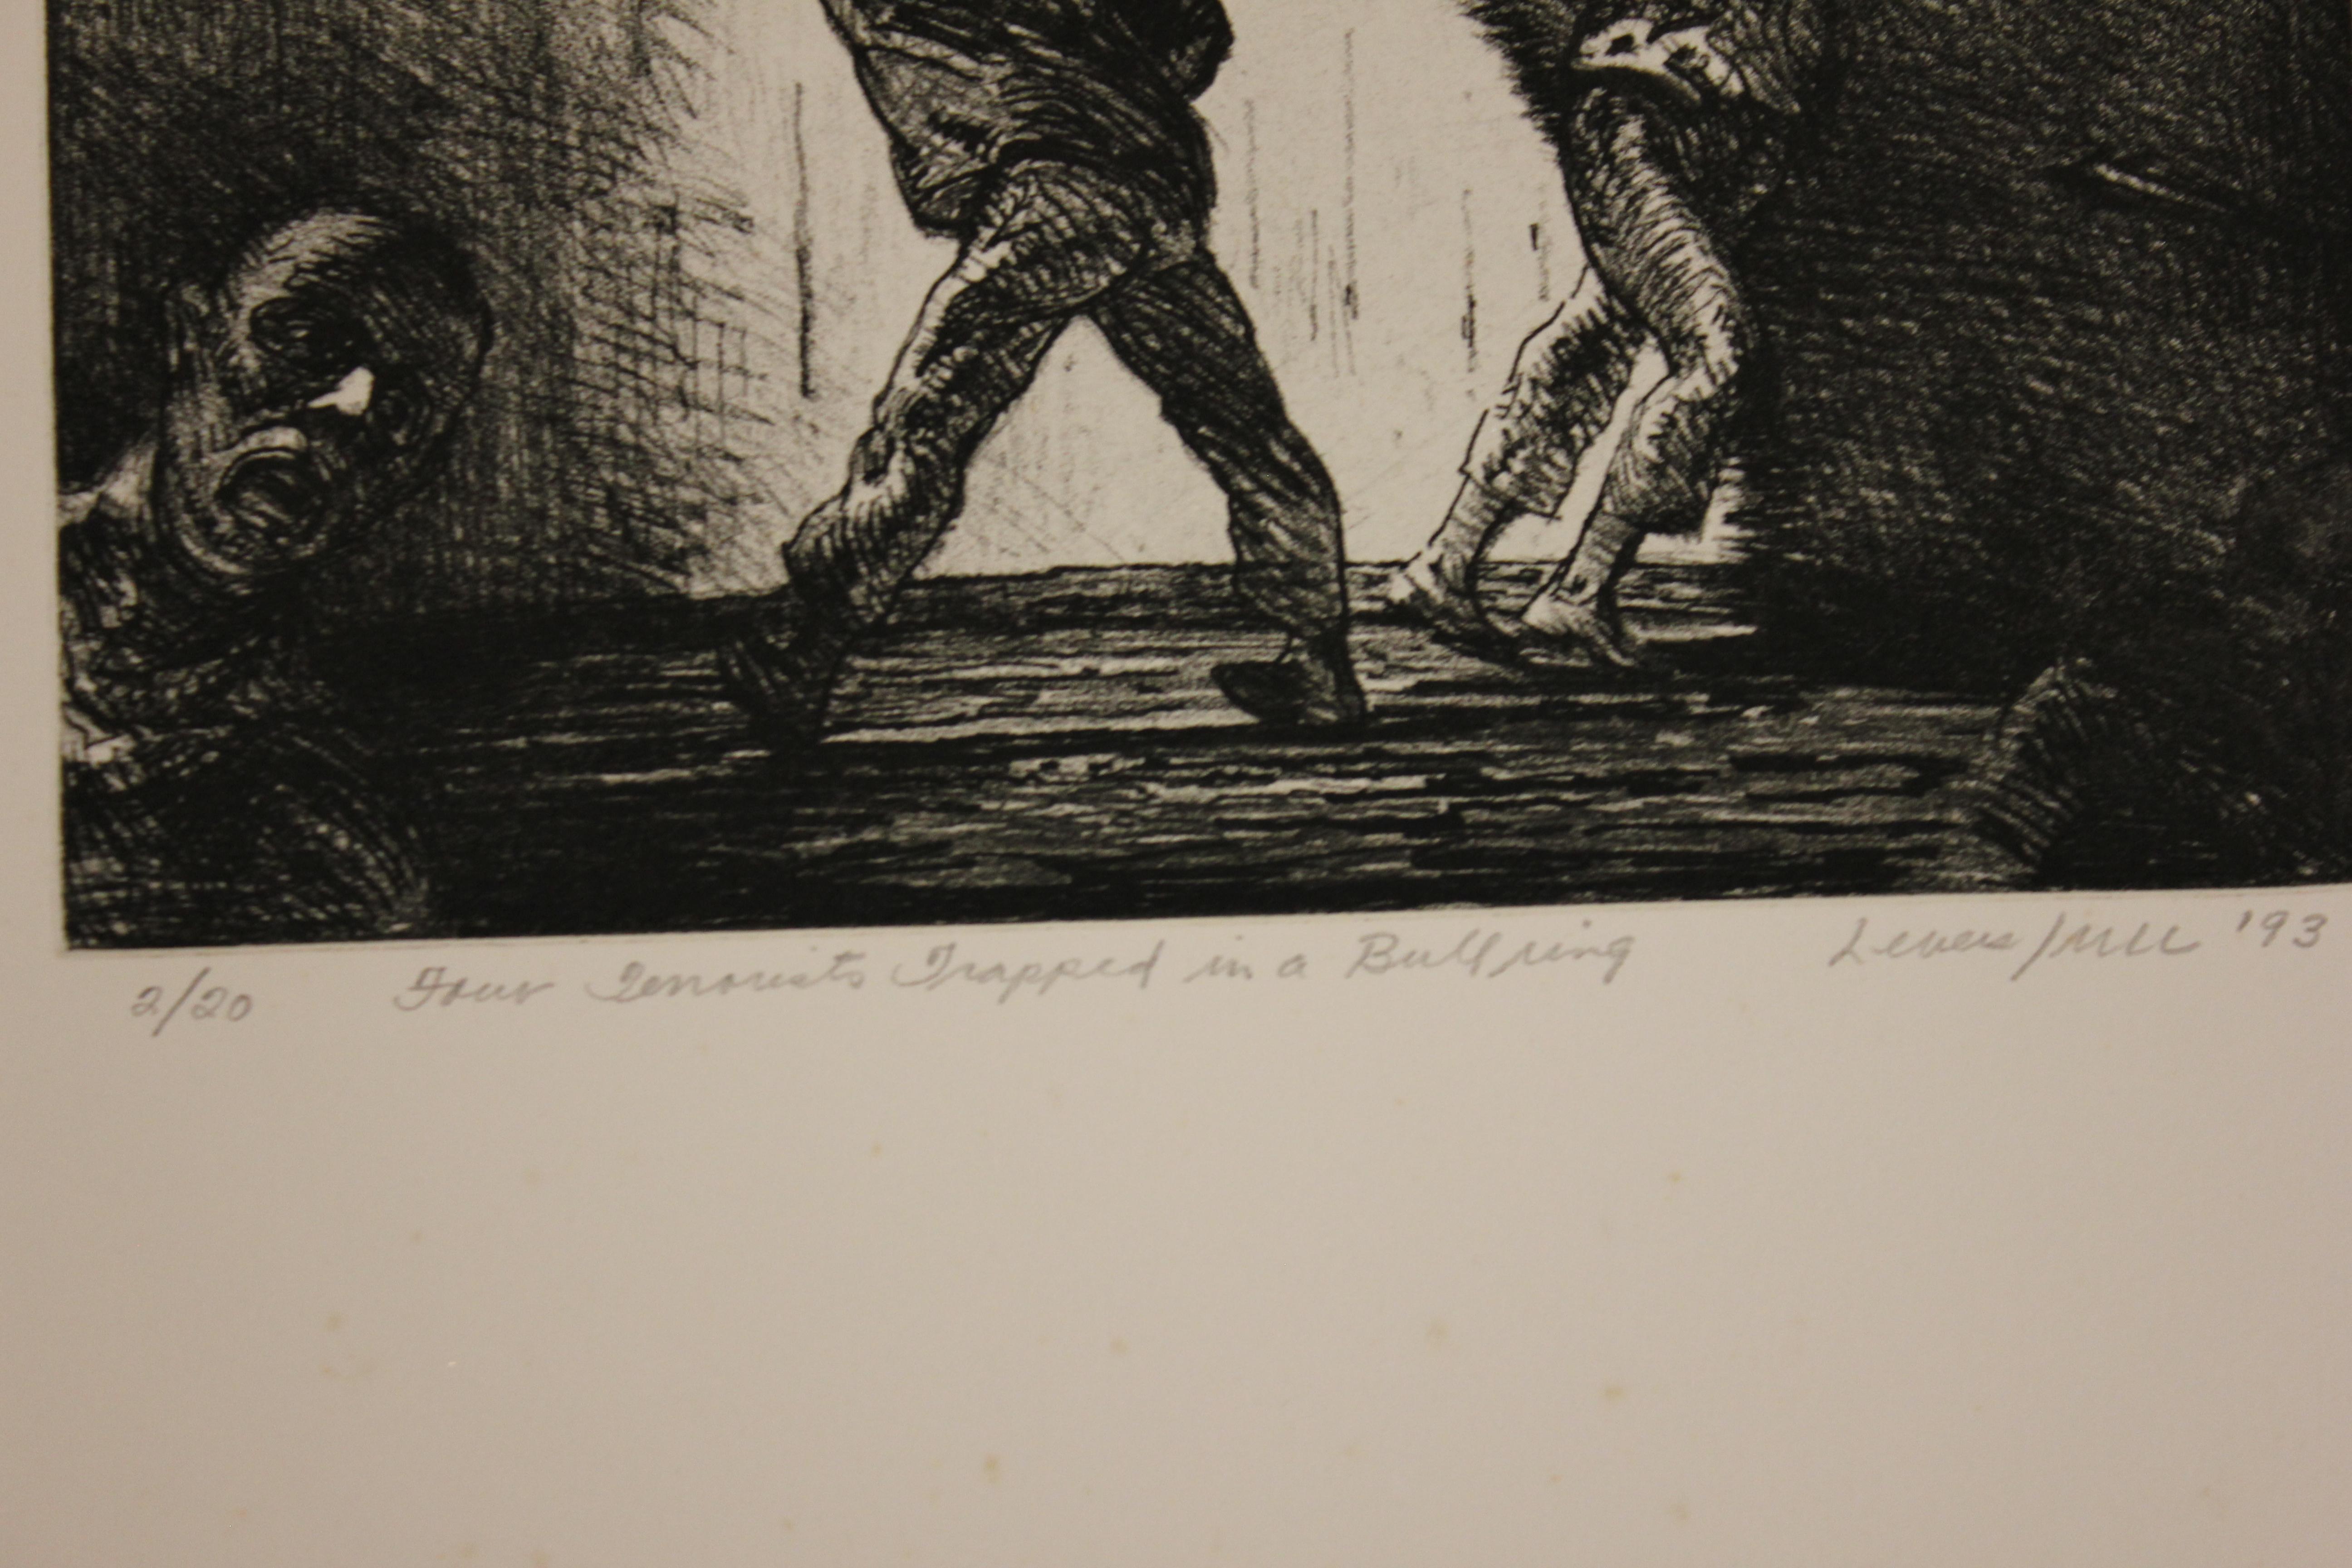 „Four Terrorist Trapped in a Bullring“, Auflage 2 von 20 Stück – Print von Robert Levers